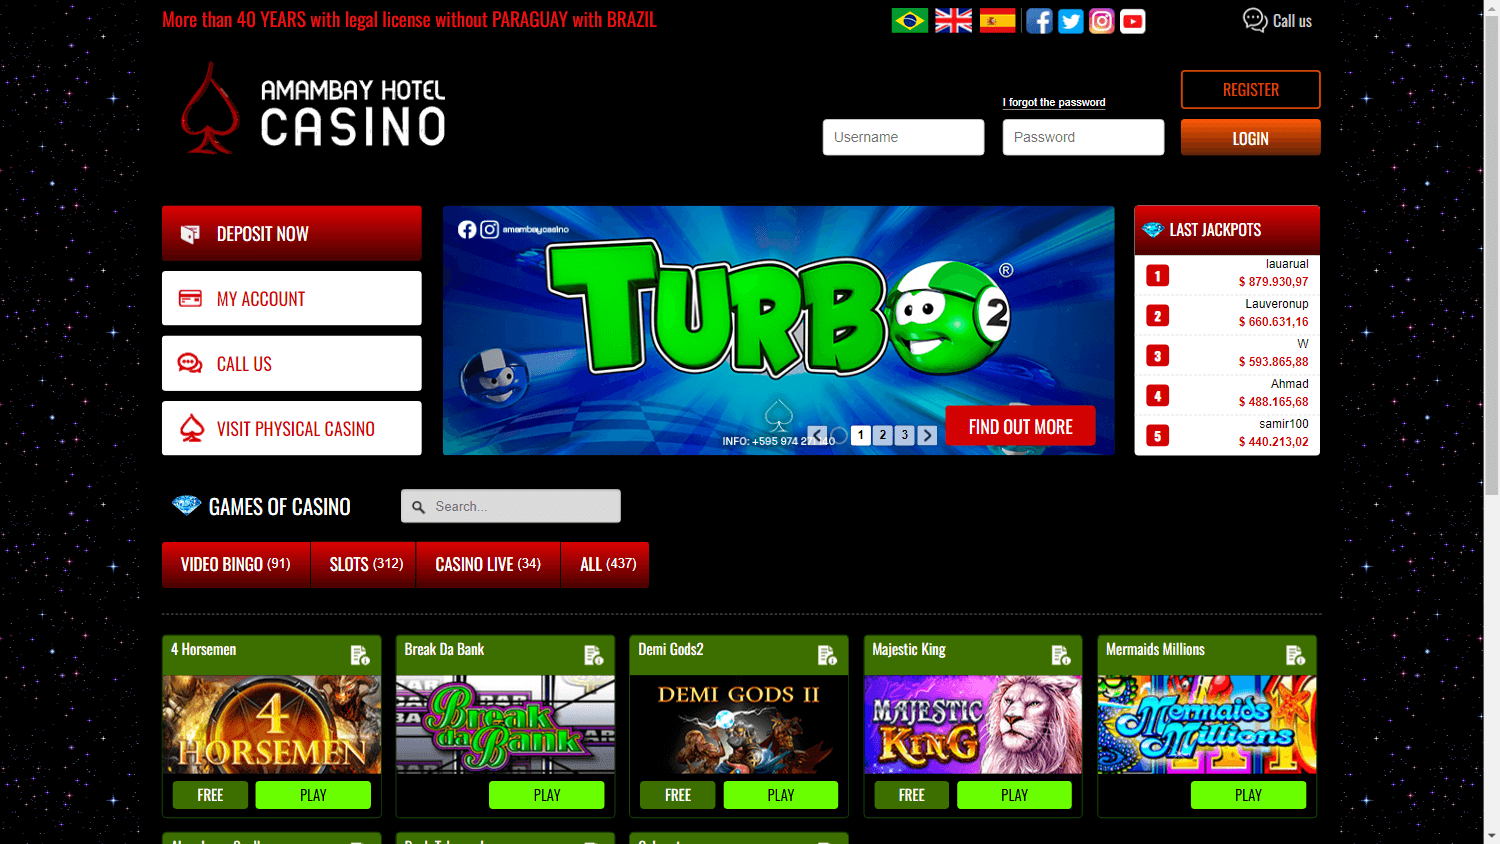 casino_amambay_homepage_desktop